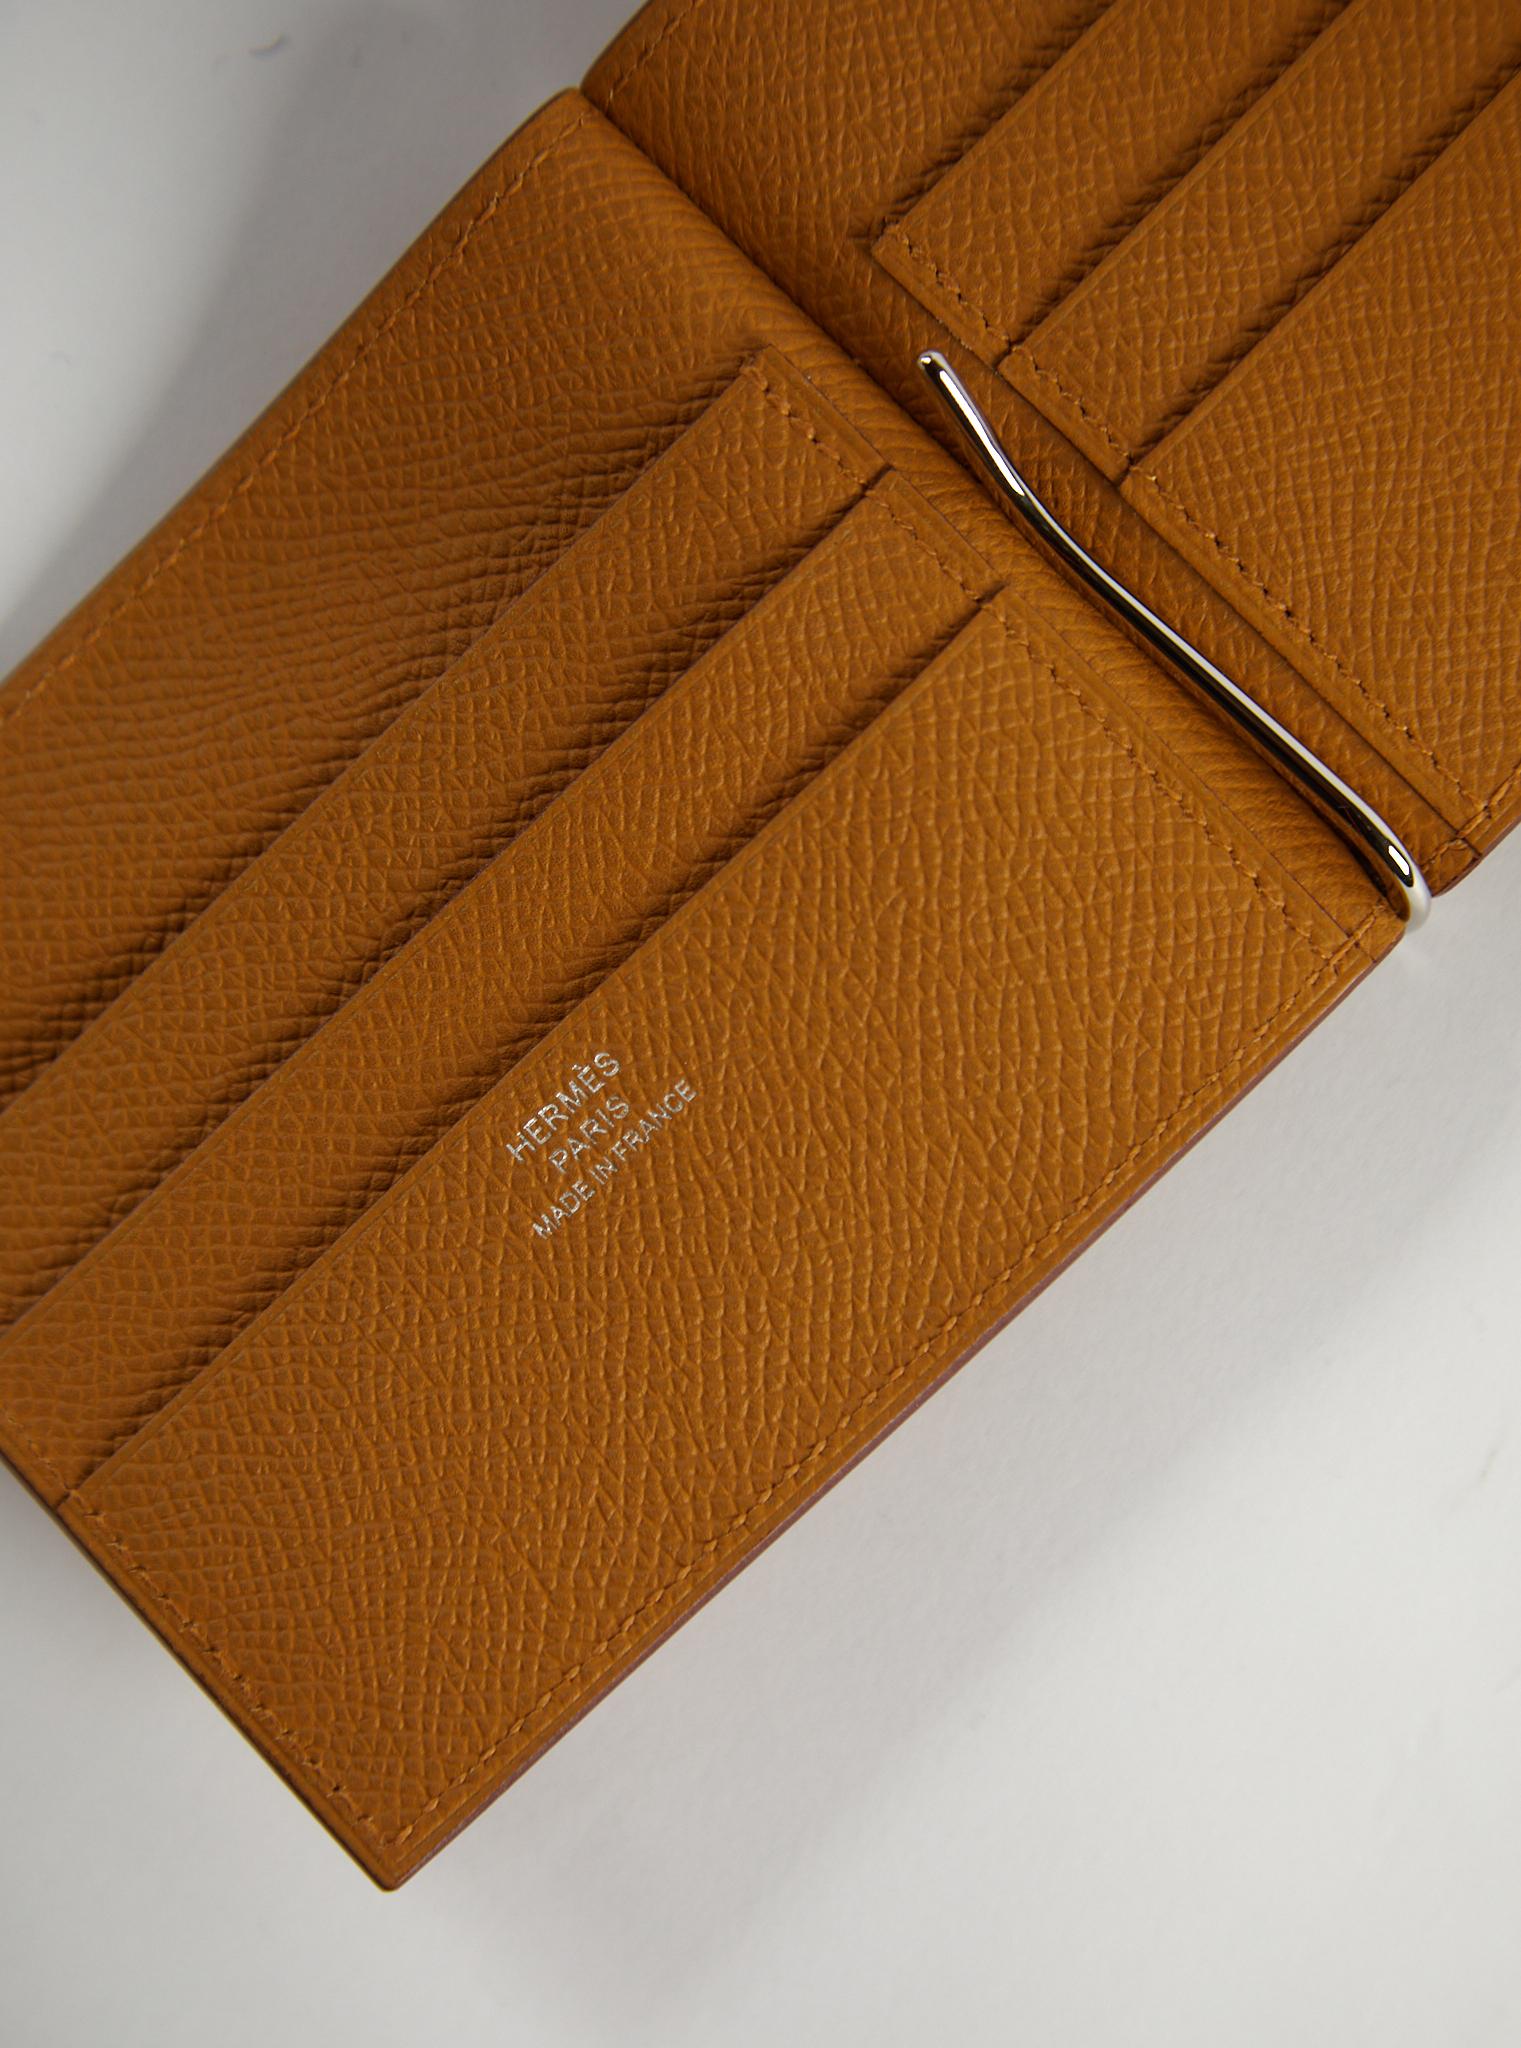 Hermès Poker Kompakt Brieftasche 

Bittersüßes Leder 

6 Kreditkartenfächer und ein palladierter Rechnungsclip

Begleitet von: Hermès Box & Schleife 

Abmessungen: L 11,6 x H 8,9 x T 0,8 cm

Hergestellt in Frankreich